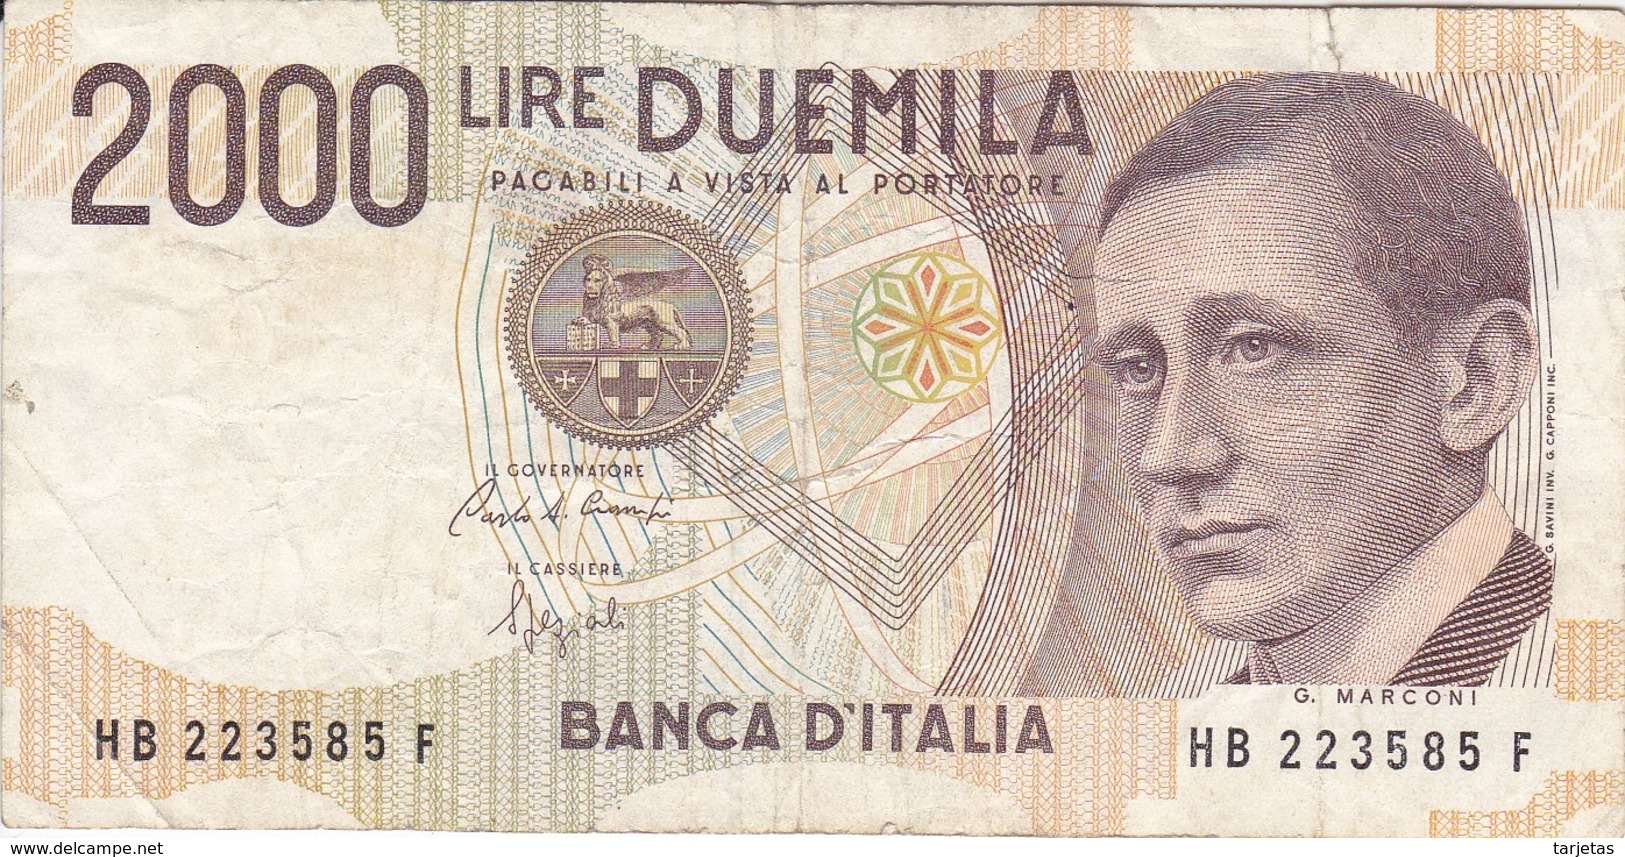 BILLETE DE ITALIA DE 2000 LIRAS DEL AÑO 1990  MARCONI  (BANKNOTE) - 2000 Lire